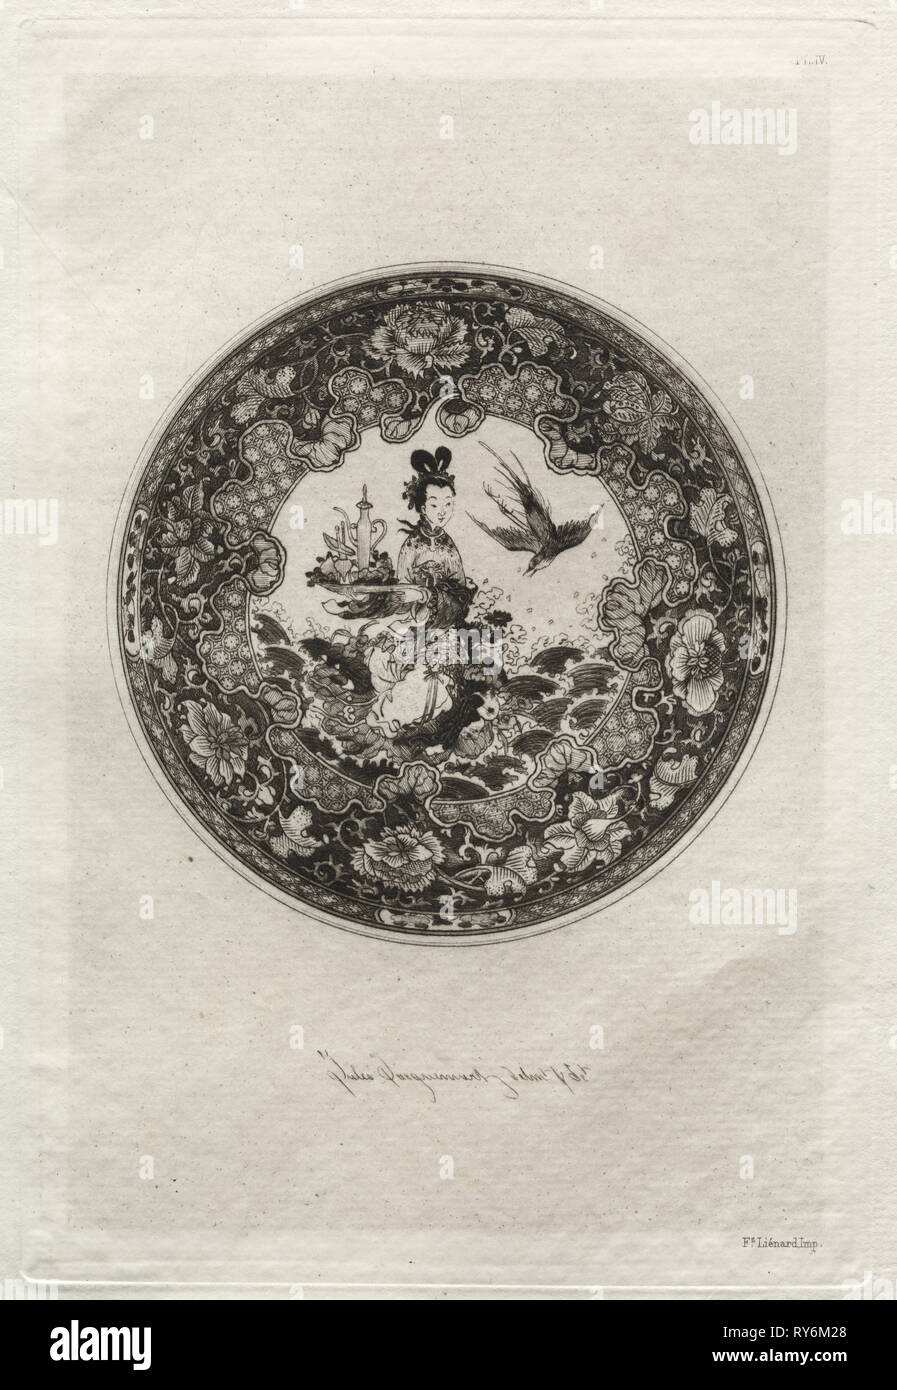 La storia dell'Arte Ceramica: piattino con ricco suolo smaltato e medaglione rappresentante la Dea Kounin , c. 1877. Jules Jacquemart (Francese, 1837-1880), Ampson bassa, Marston, Searle & Rivington. Incisione; foglio: 28,6 x 20,6 cm (11 1/4 x 8 1/8 in.); platemark: 18,9 x 12,8 cm (7 7/16 x 5 1/16 in Foto Stock